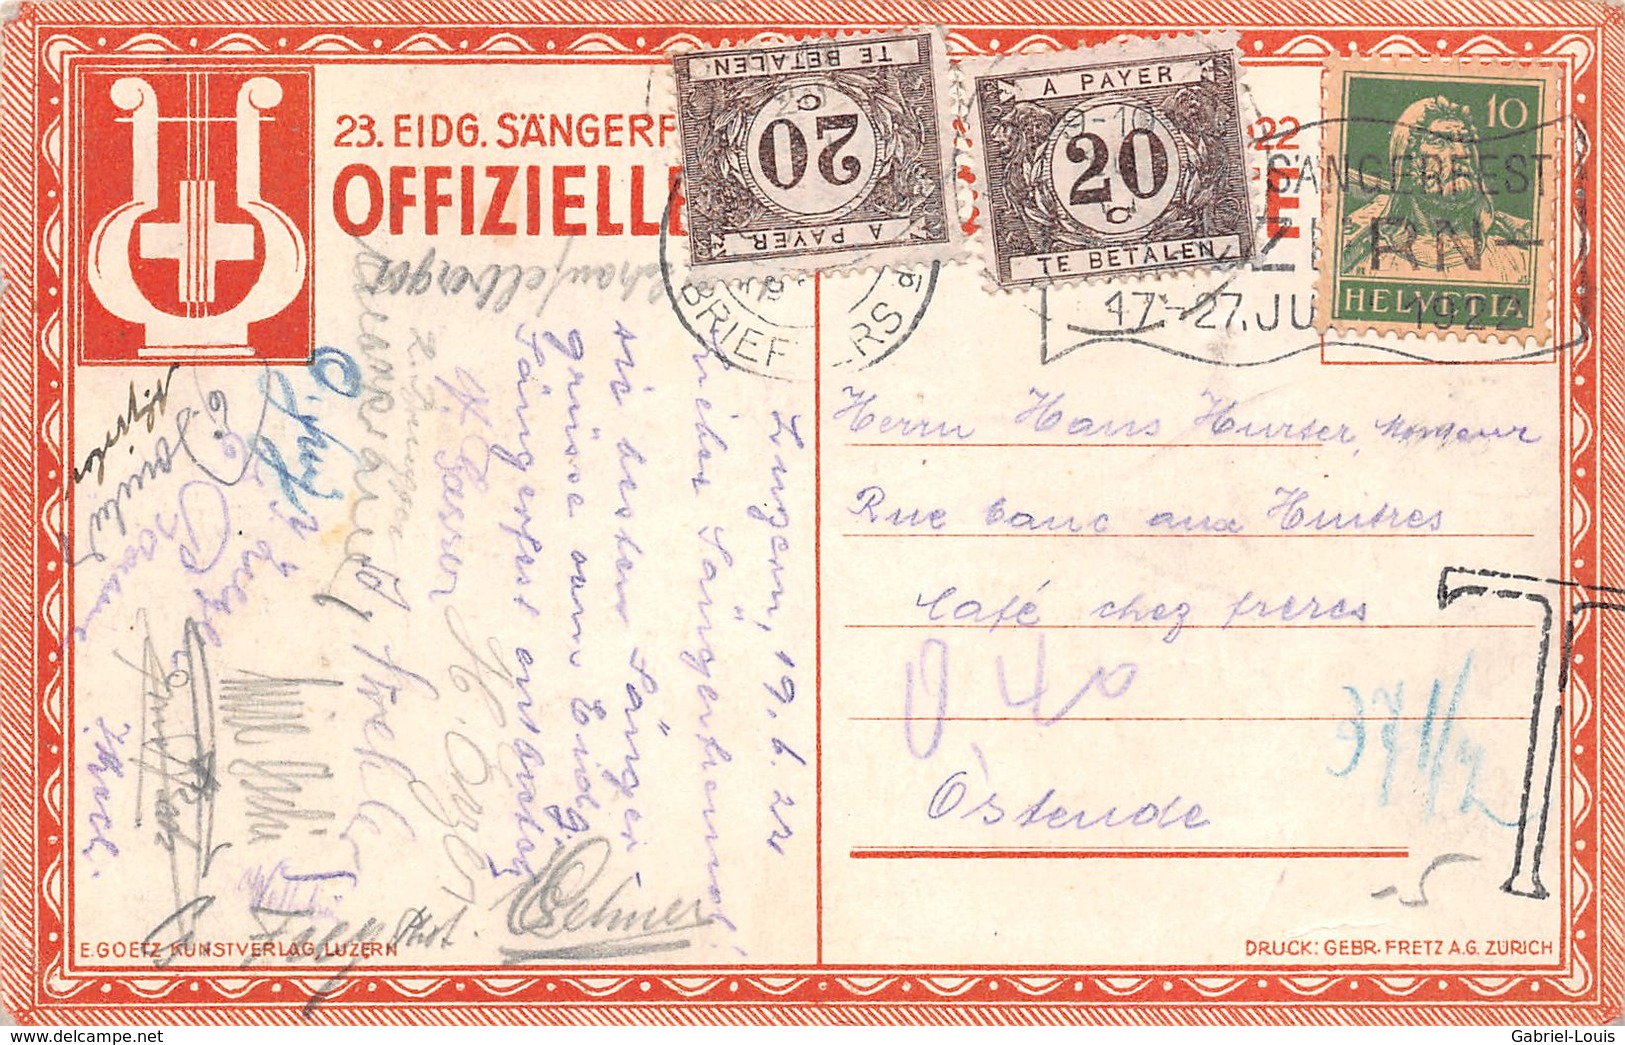 Eidgen Sangerfest Luzern 17-27 Juni 1922 -  Besteuerte Karte Für Unzureichendes Porto In Belgien - Luzern